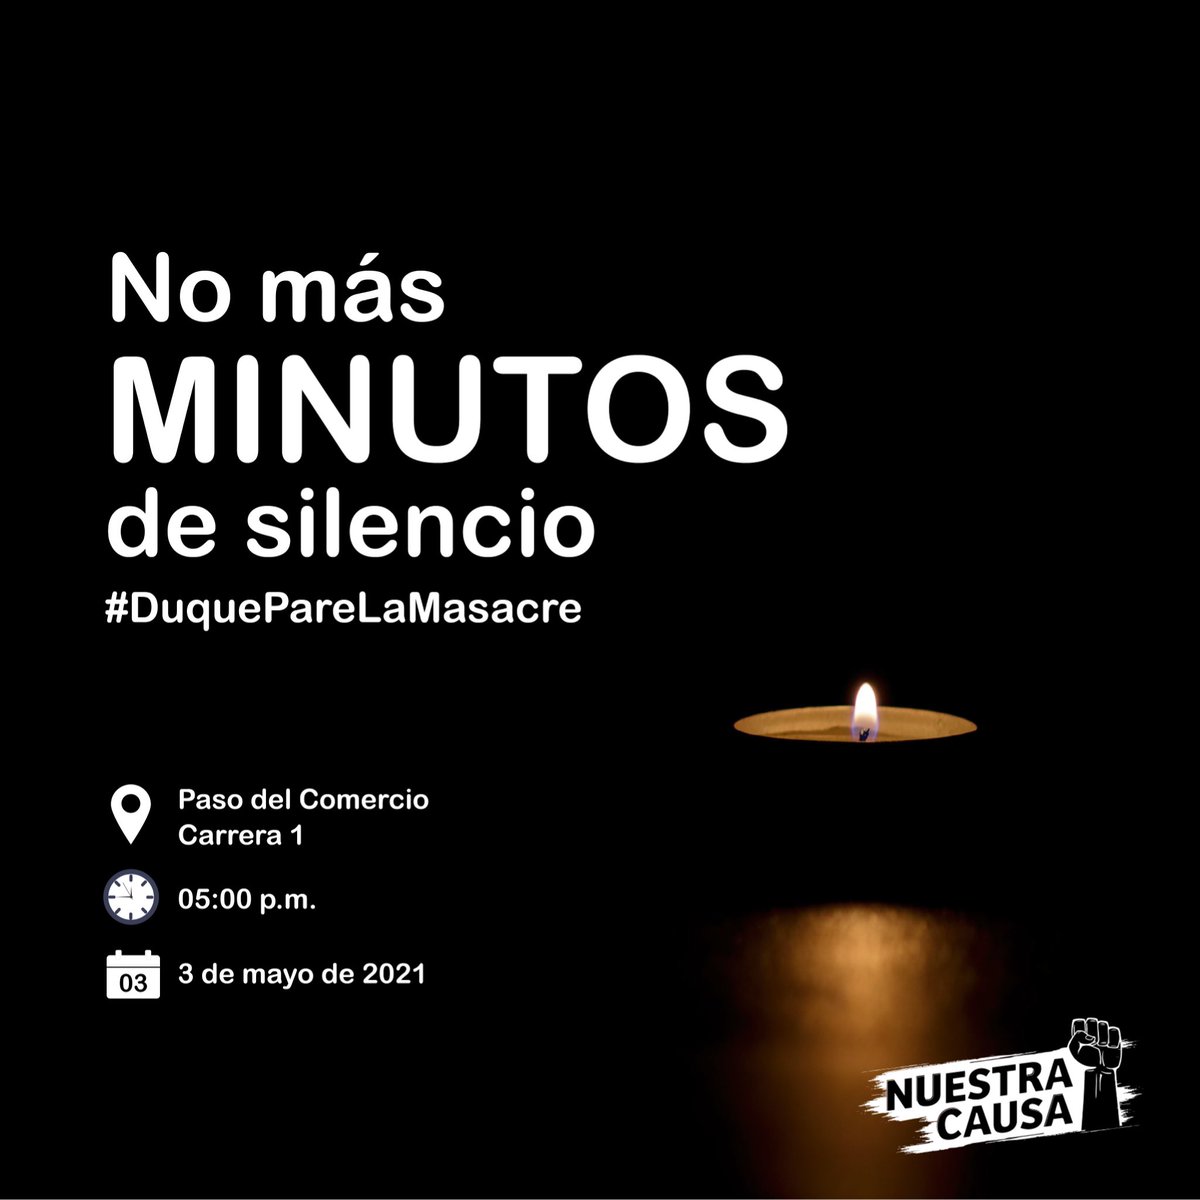 Hoy invitamos a que en cada una de sus casas, esta noche encendamos una vela, le tomemos una foto, la subimos a redes sociales y ponemos el HT #DuquePareLaMasacre A quienes nos quieren acompañar, estaremos en el punto donde asesinaron a Nicolás Guerrero haciendo el homenaje🕯💜